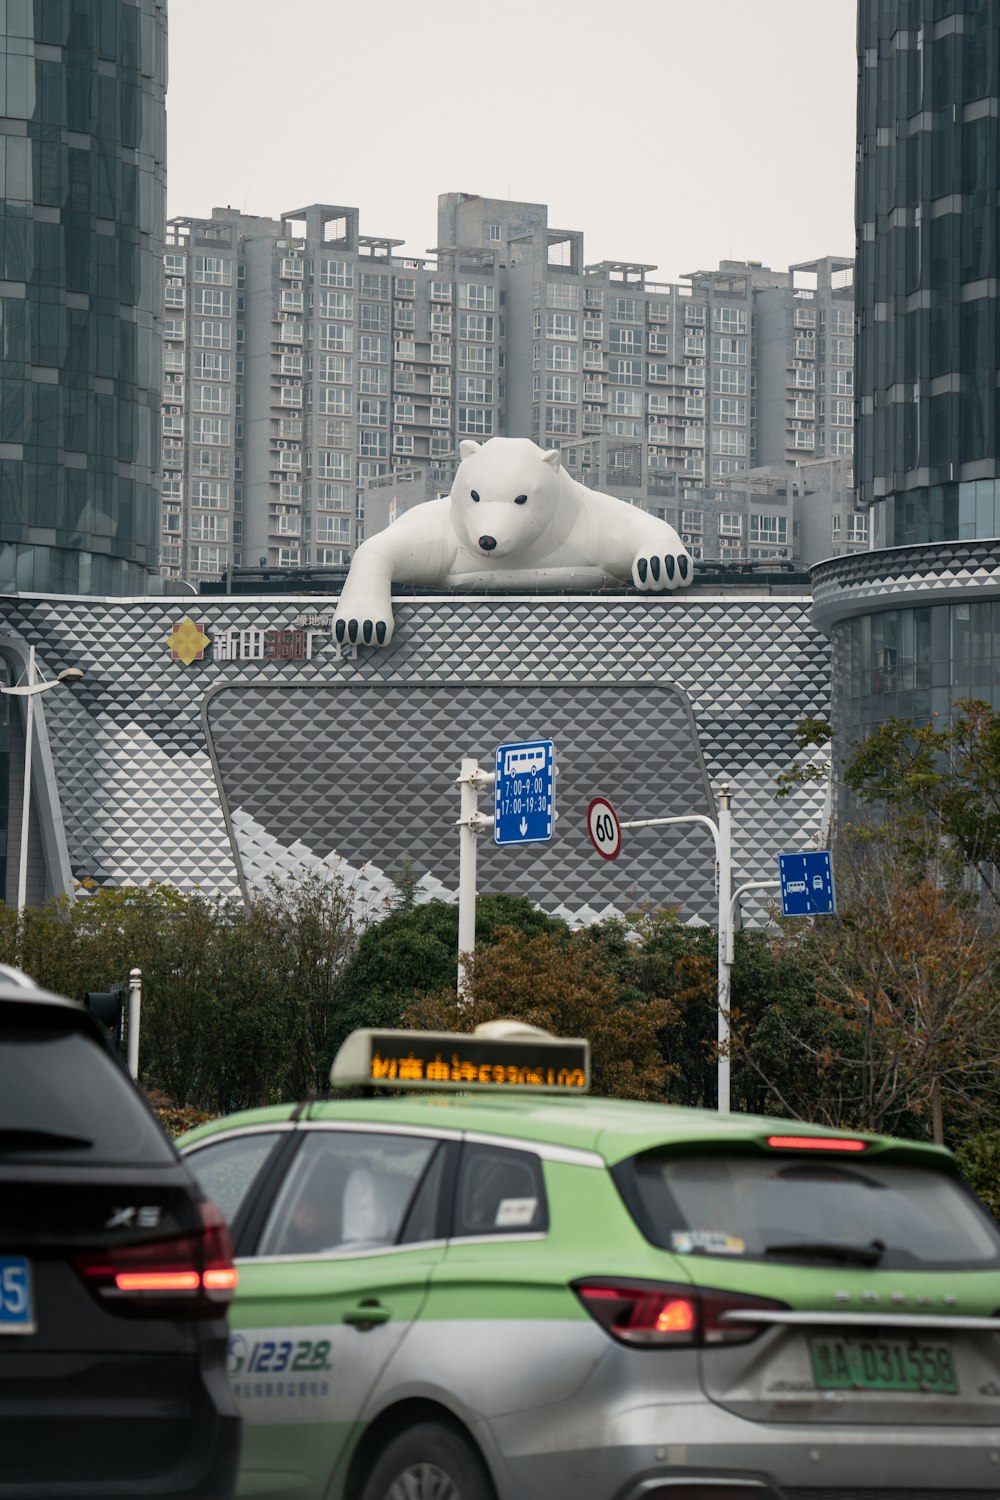 orso polare bianco su recinzione metallica grigia